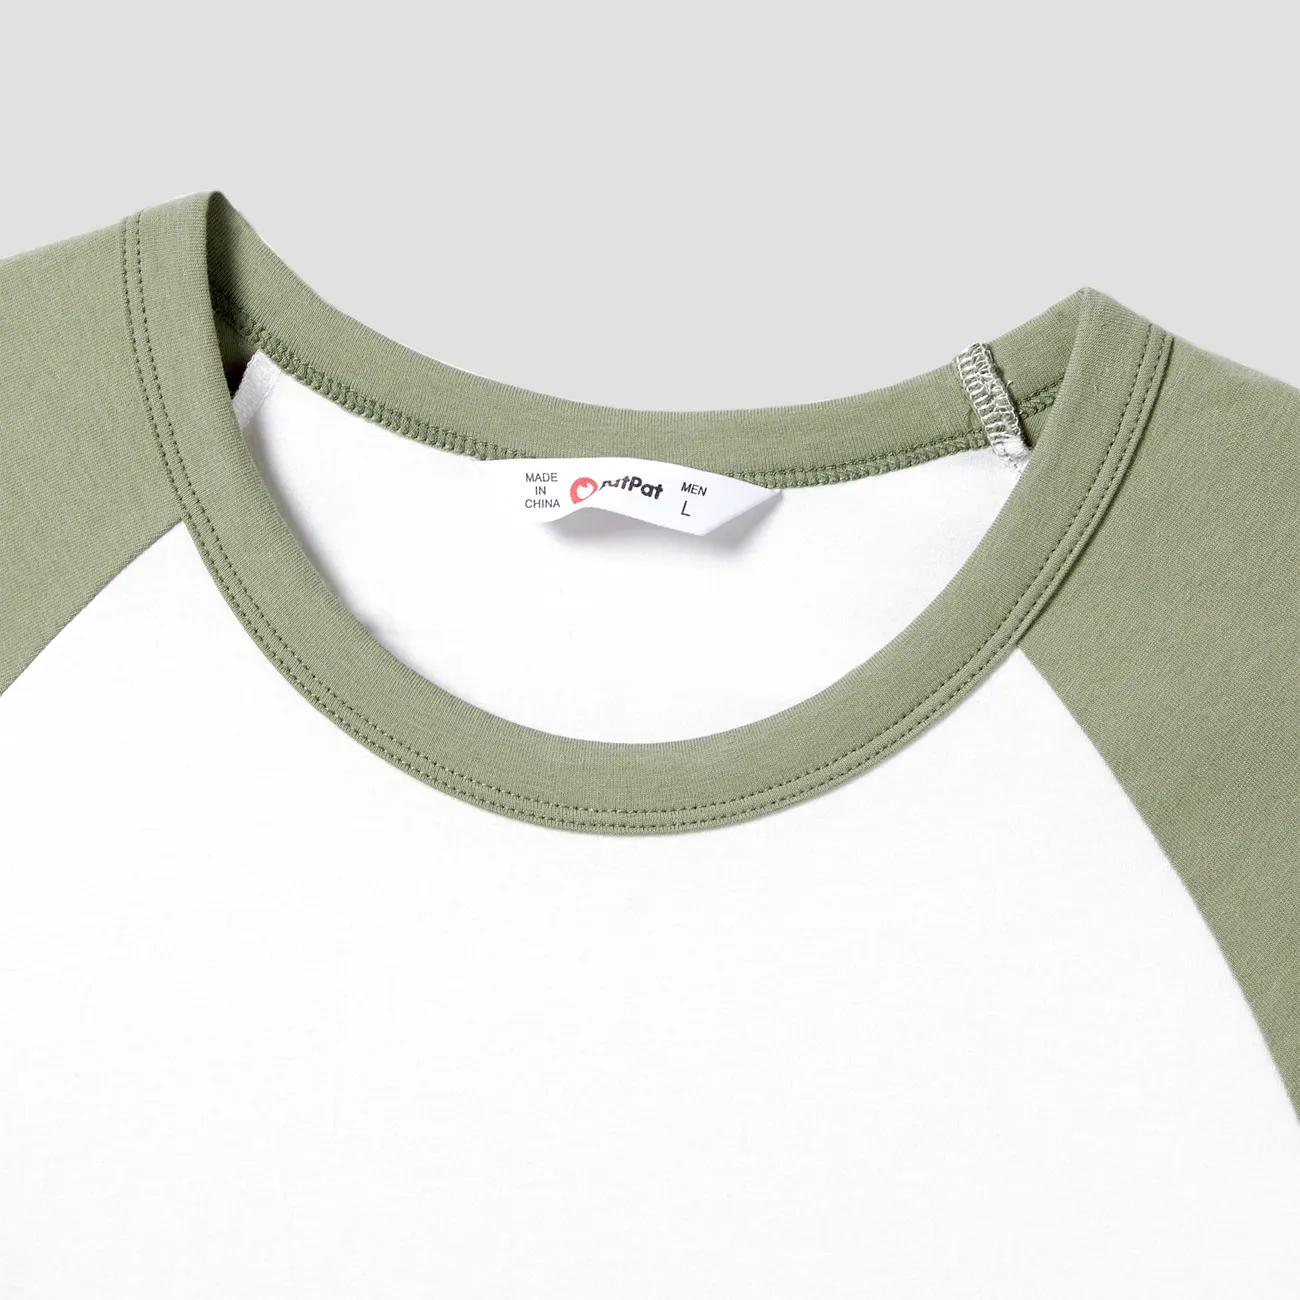 Matching Family Raglan-Sleeve T-shirt and Flutter Shoulder Floral Dress Sets LightArmyGreen big image 1